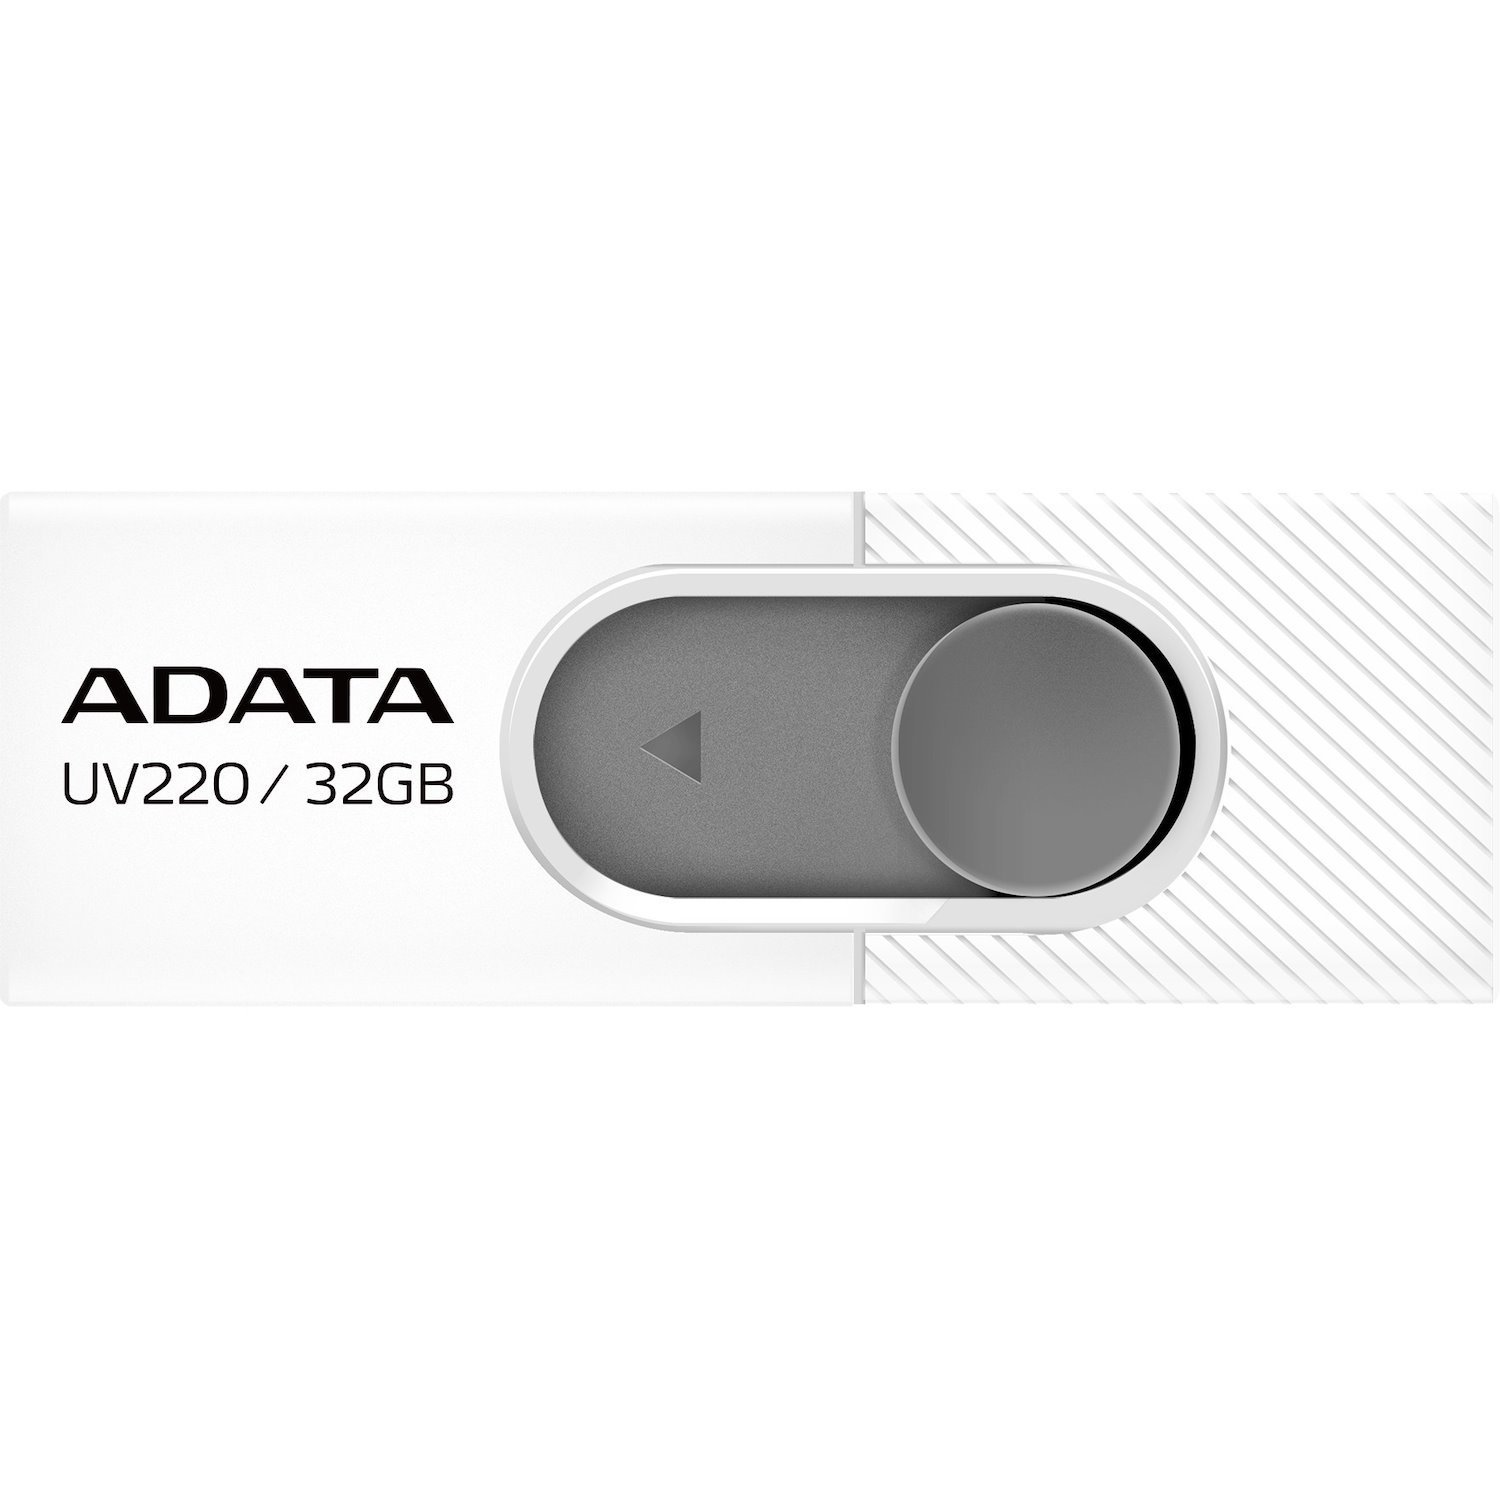 Adata Classic UV220 32GB USB 2.0 Flash Drive